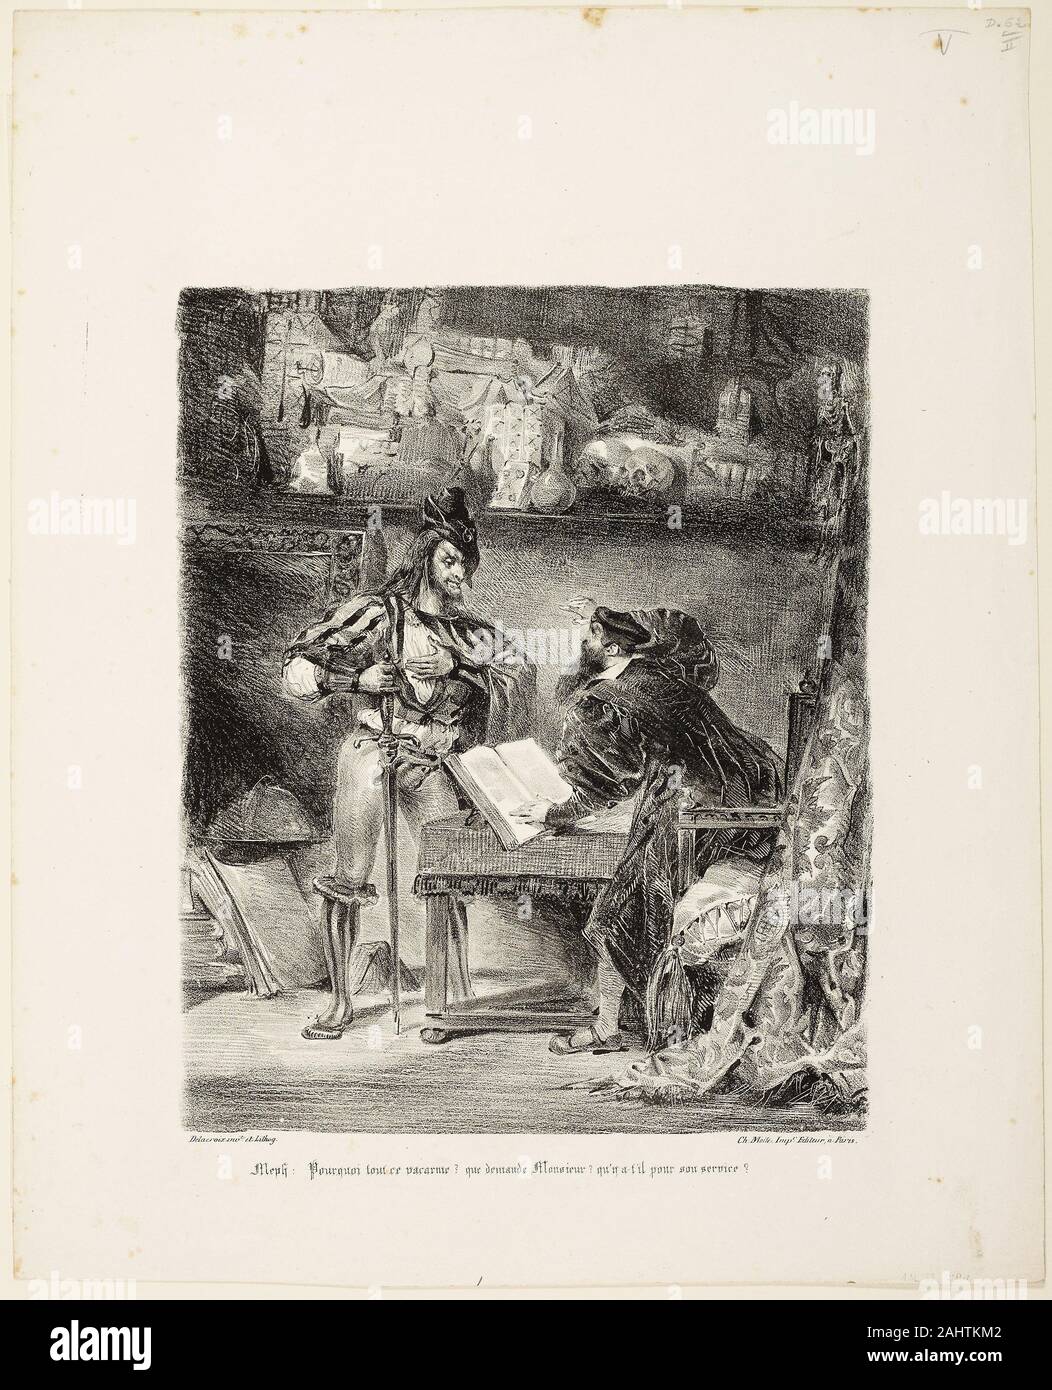 Eugène Delacroix. Mephistopheles apparendo Faust. 1828. La Francia. Litografia in bianco e nero in avorio carta intessuta Foto Stock